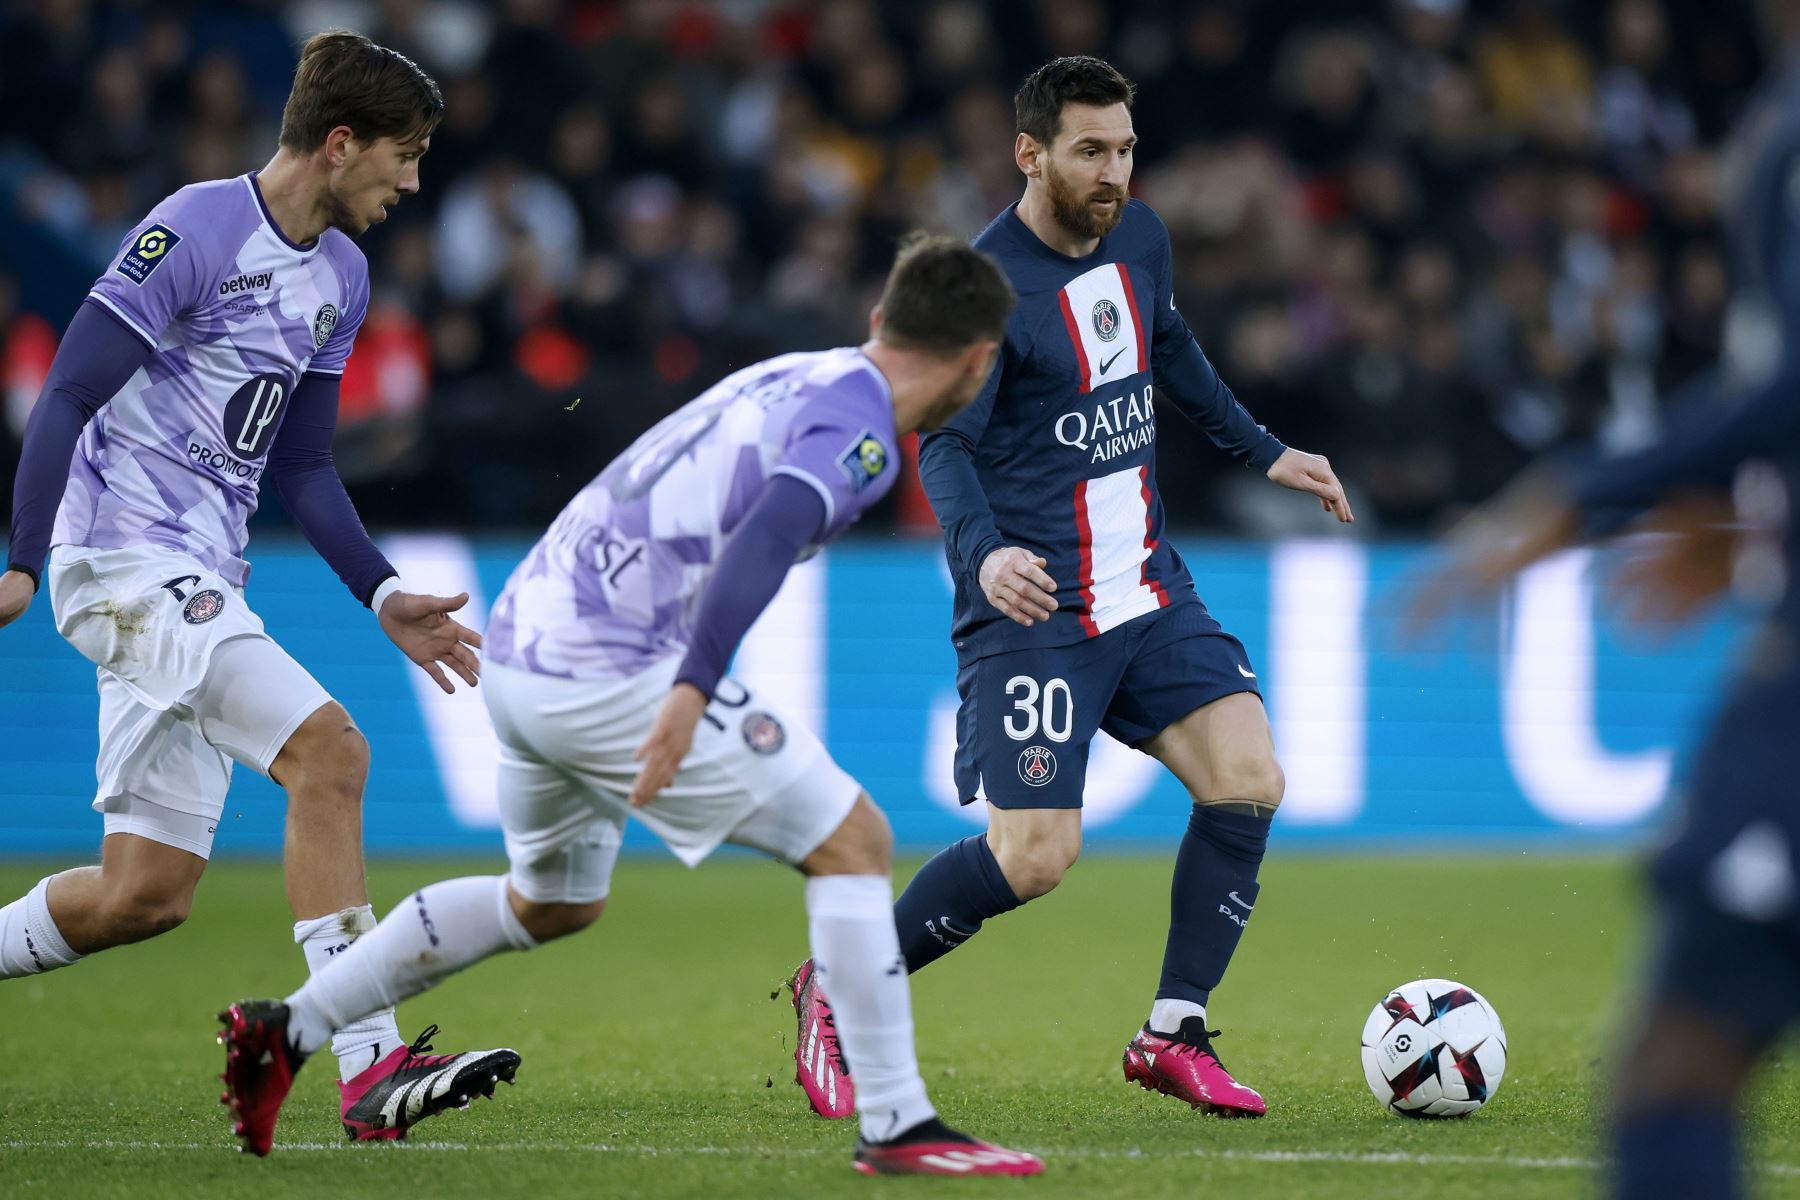 Lionel Messi del Paris Saint Germain en acción durante el partido de fútbol de la Ligue 1 francesa entre el PSG y el Toulouse FC en el estadio Parc des Princes de París, Francia.
Foto: EFE